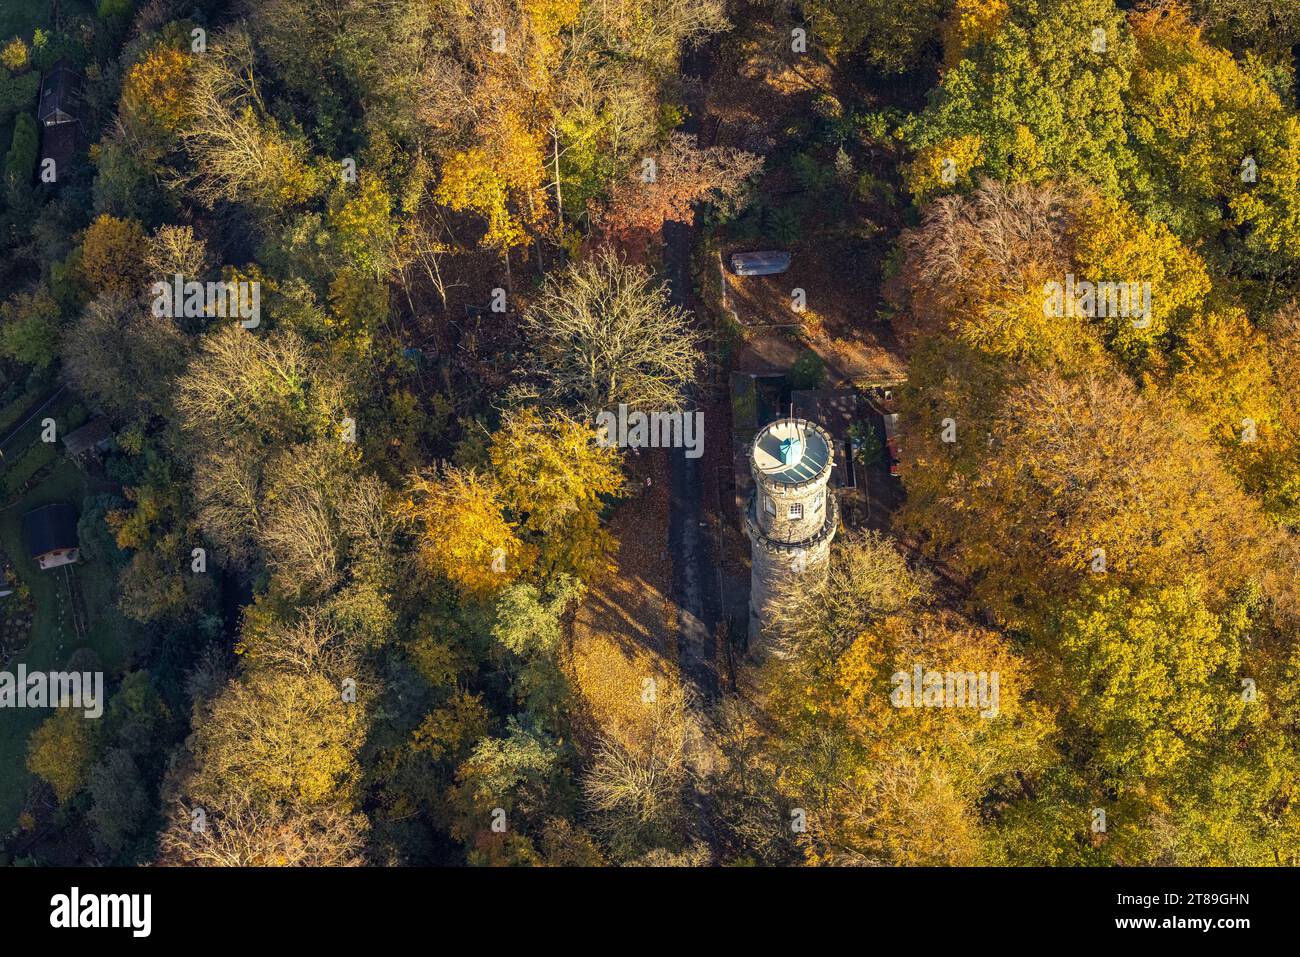 Vue aérienne, Helenenturm rénové avec plate-forme d'observation dans la forêt d'automne avec des arbres à feuilles caduques aux couleurs vives d'automne, Witten, région de la Ruhr, Nord RHI Banque D'Images